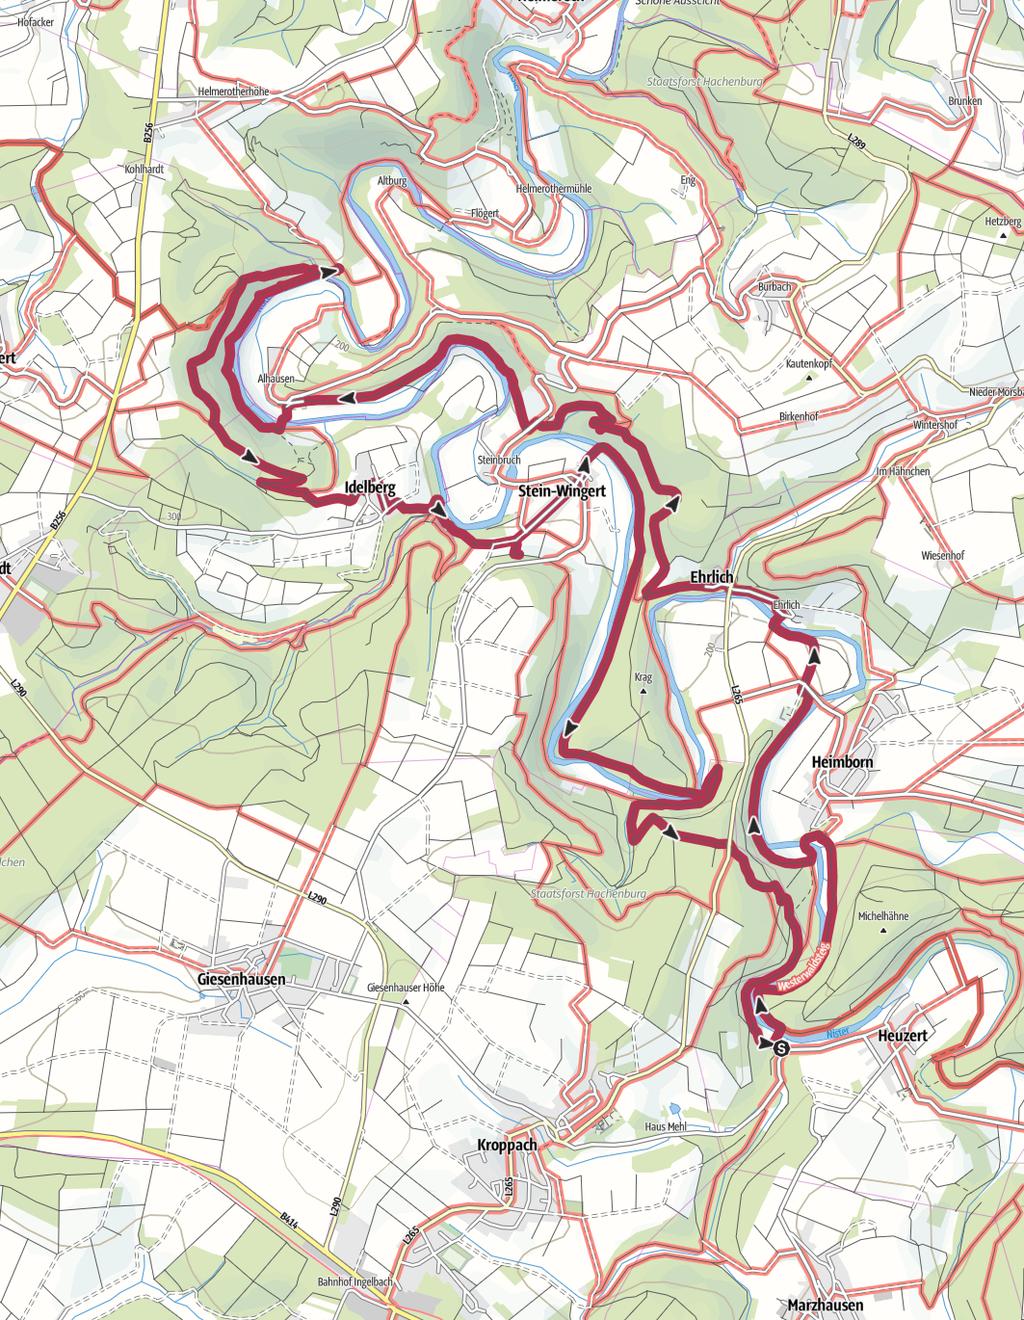 17km 5:15Std 381m 381m Schwierigkeit Kartengrundlagen: outdooractive Kartografie; Deutschland: GeoBasis-DE / BKG 2018, GeoBasis-DE / GEObasis.nrw 2018, Österreich: 1996-2018 here. All rights reserved.